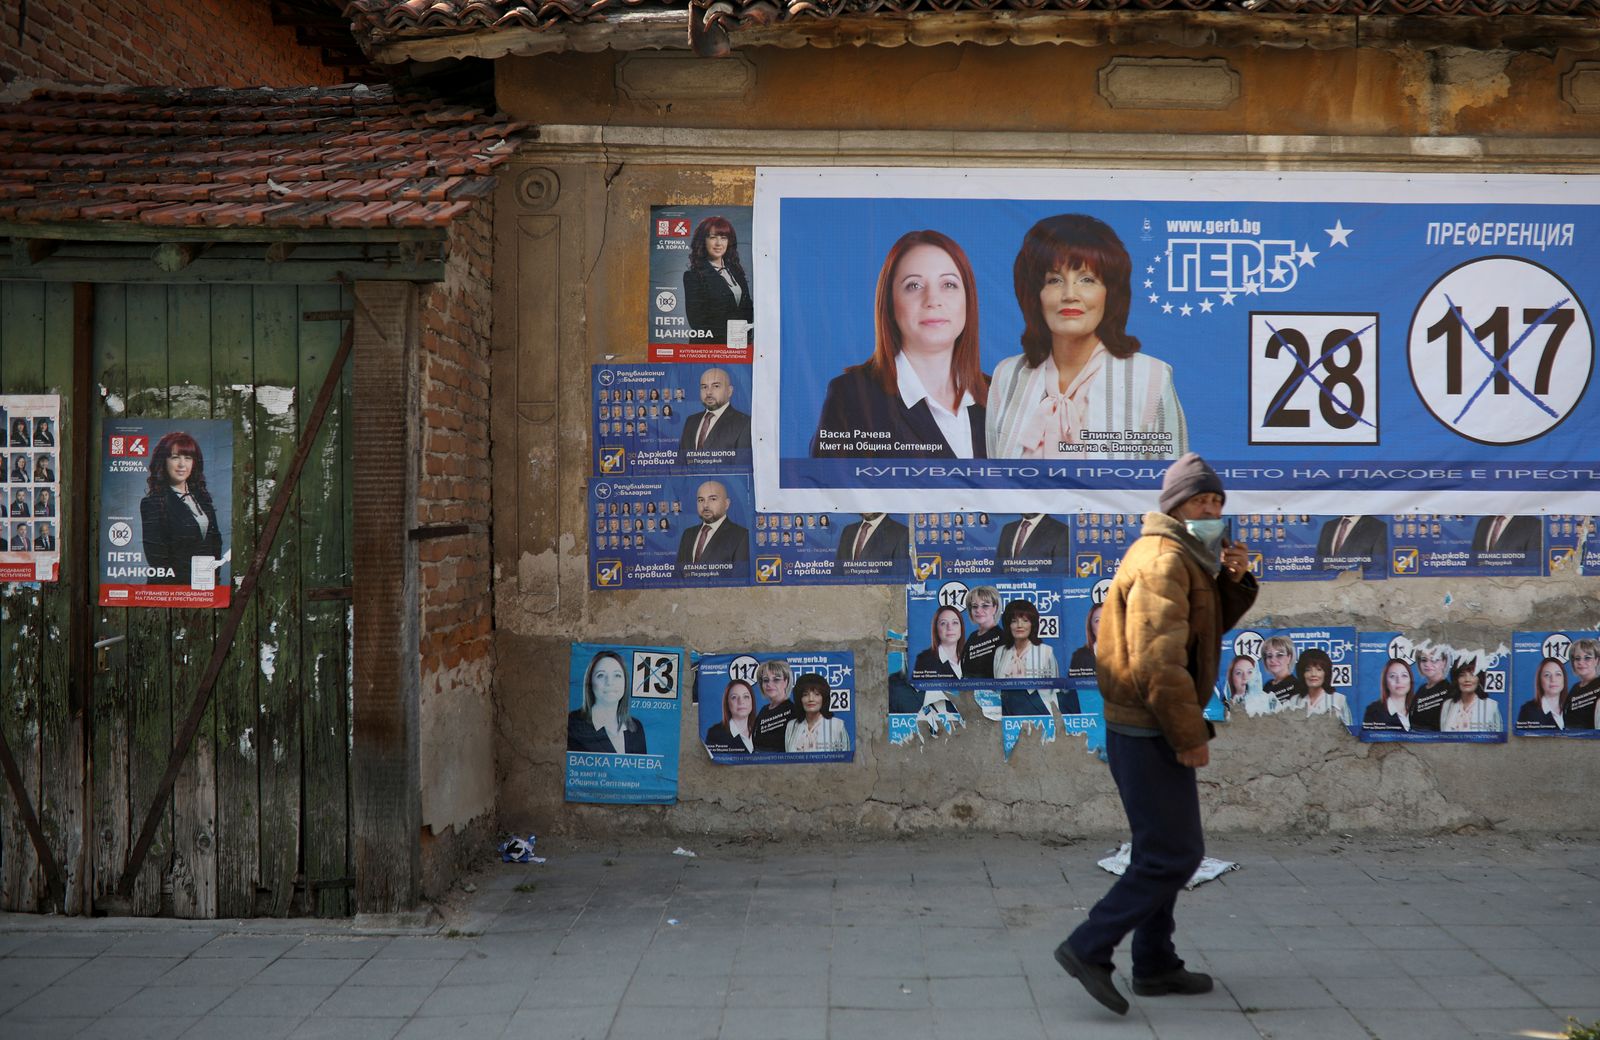 رجل يمشي أمام ملصقات إعلانية انتخابية في قرية فينوغراديتس - 4 أبريل 2021 - REUTERS